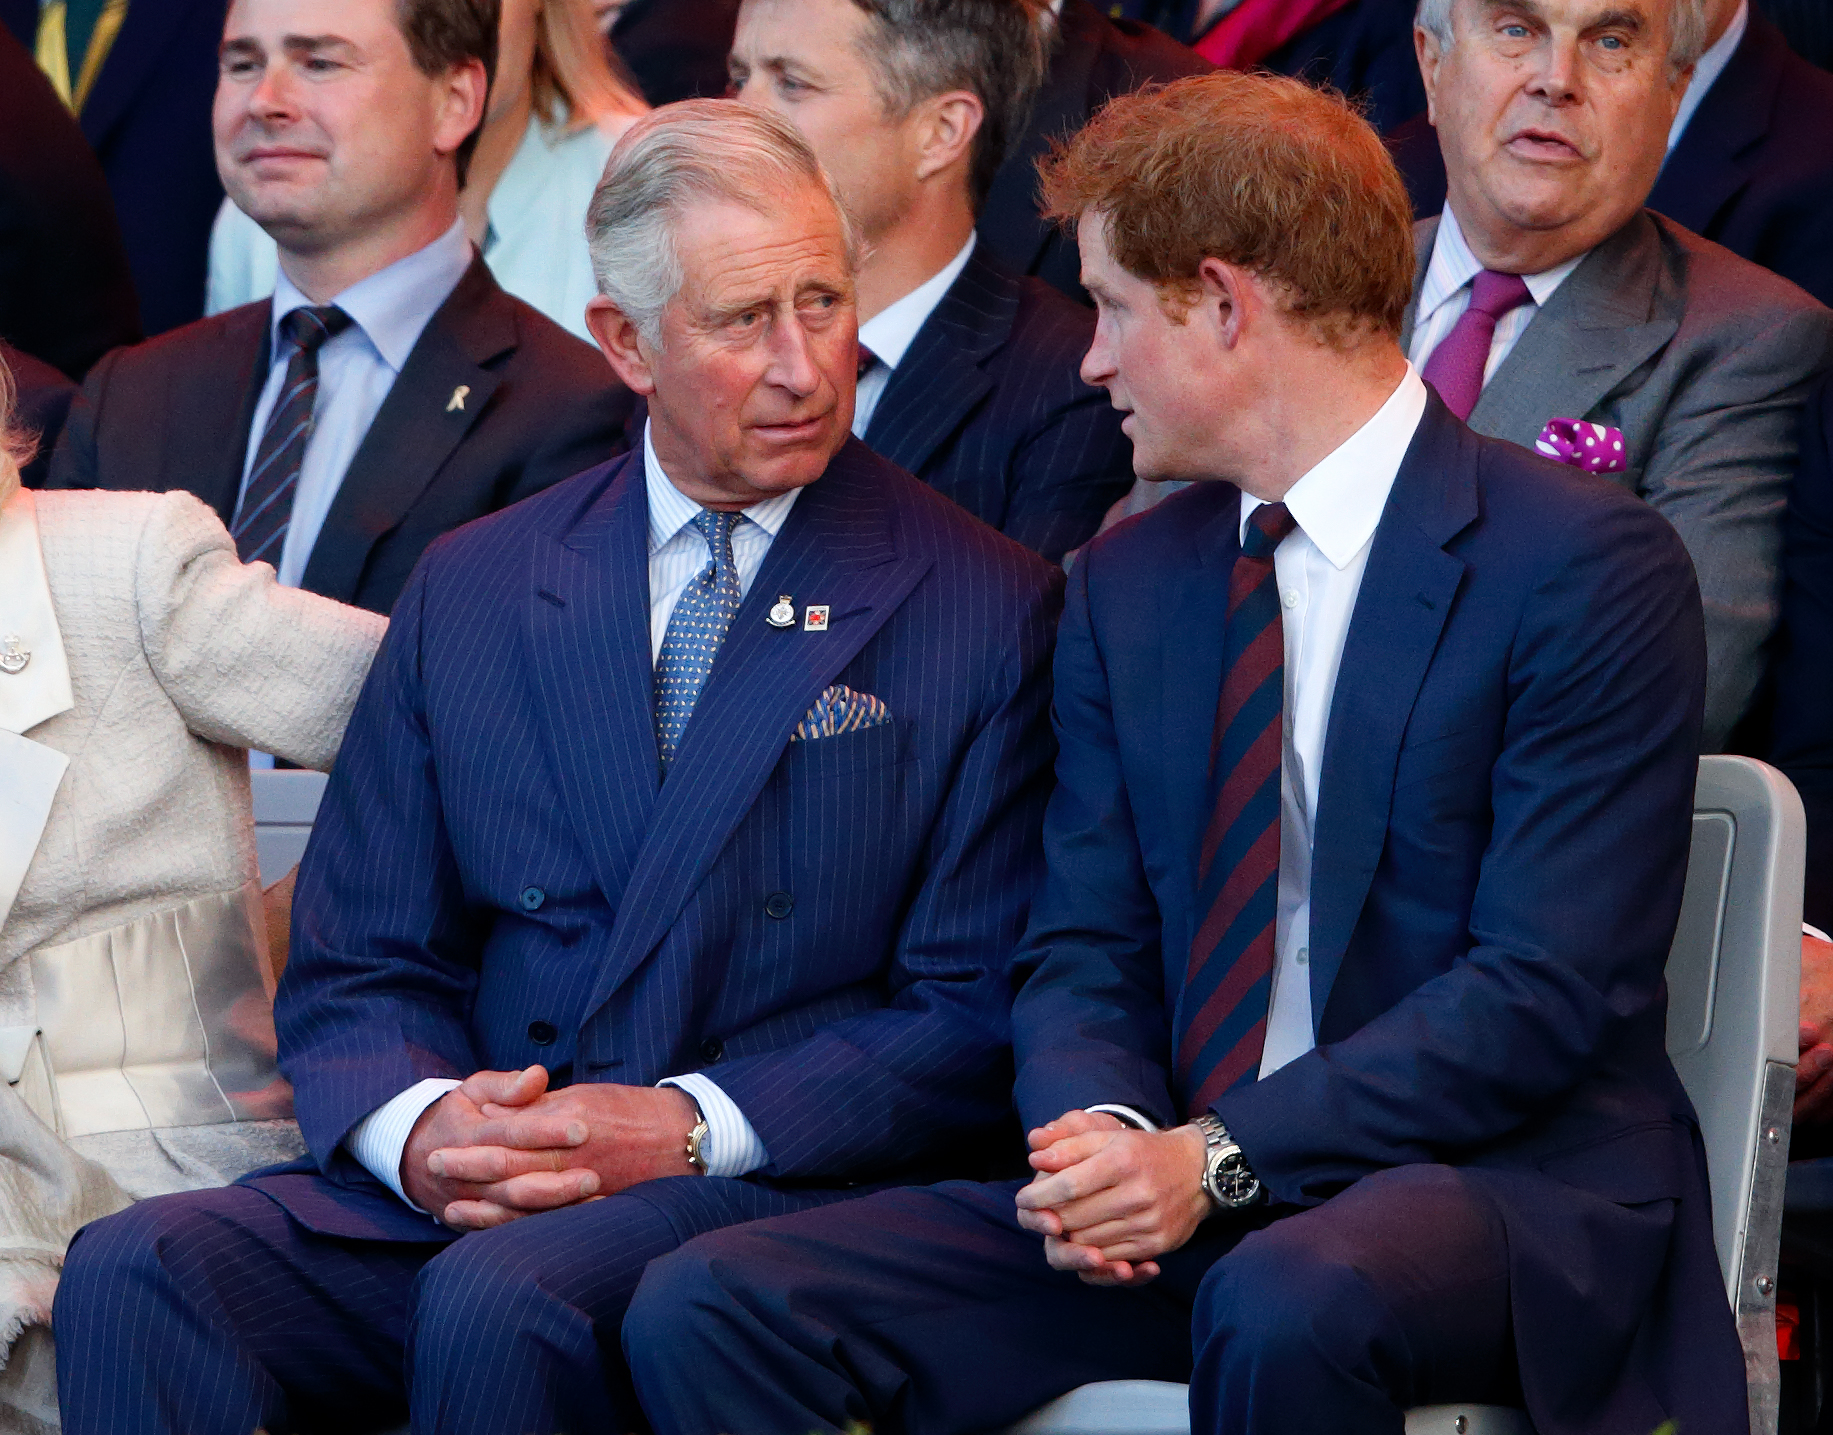 El rey Charles III y el príncipe Harry conversan durante la Ceremonia de Inauguración de los Juegos Invictus en Londres, Inglaterra, el 10 de septiembre de 2014 | Fuente: Getty Images